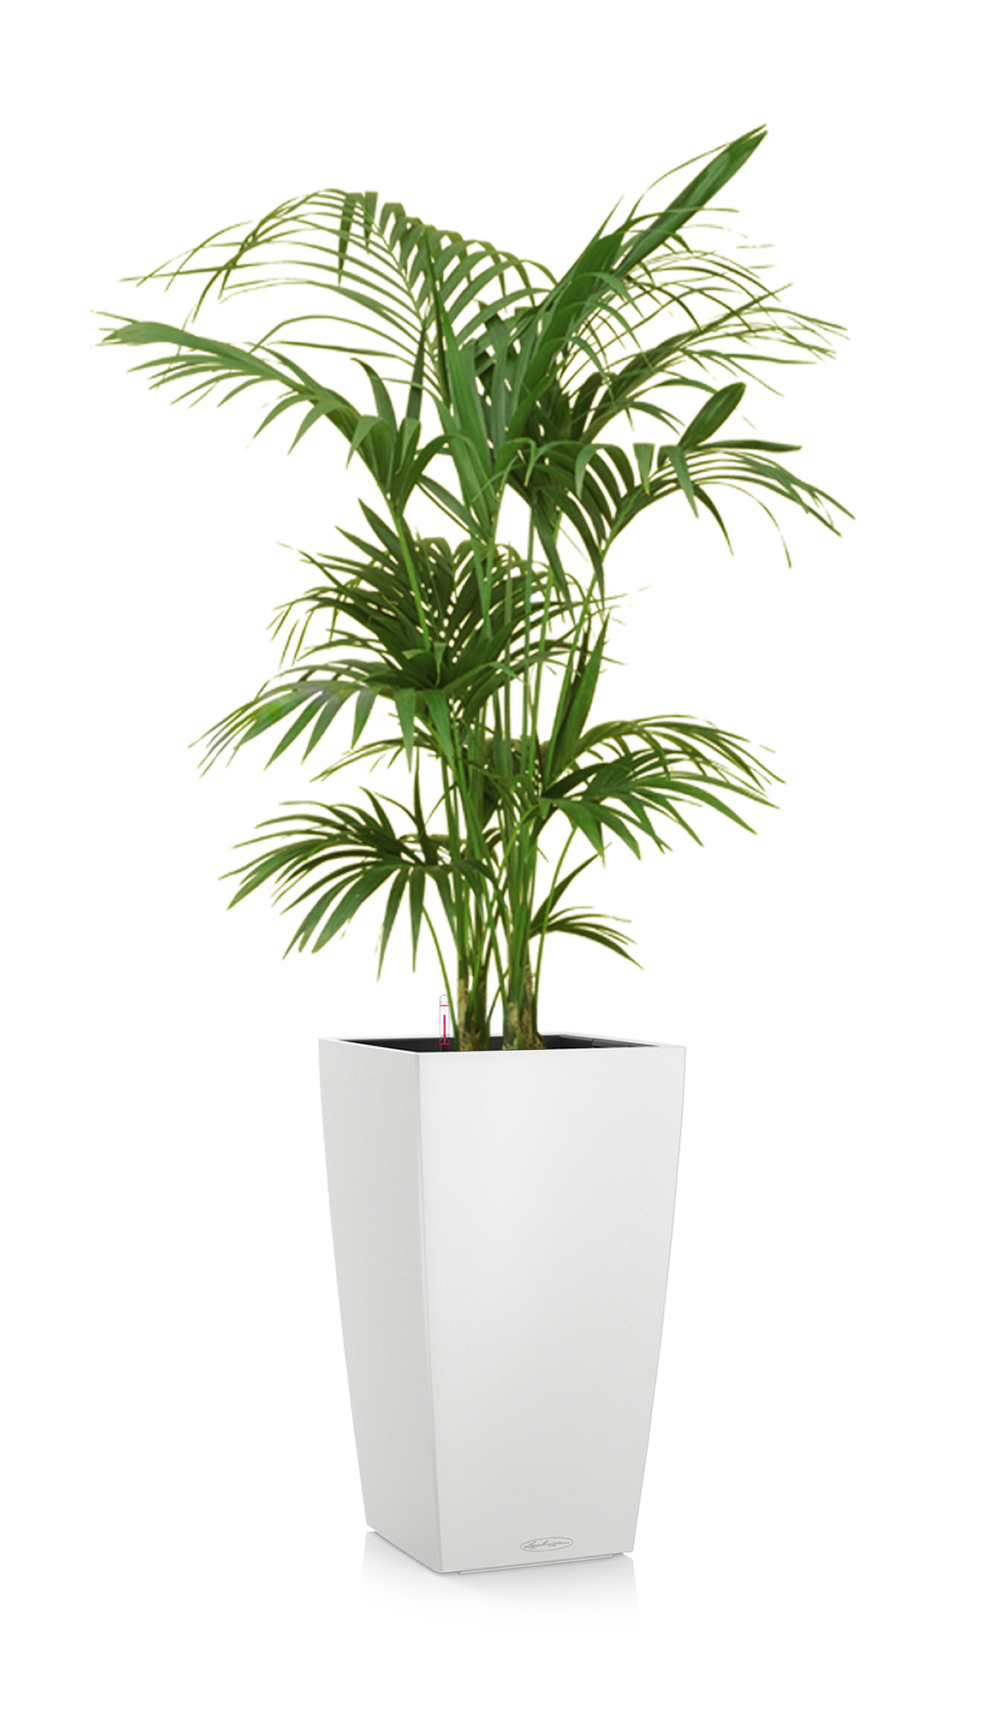 greenleaf_medhigh light_kentia palm